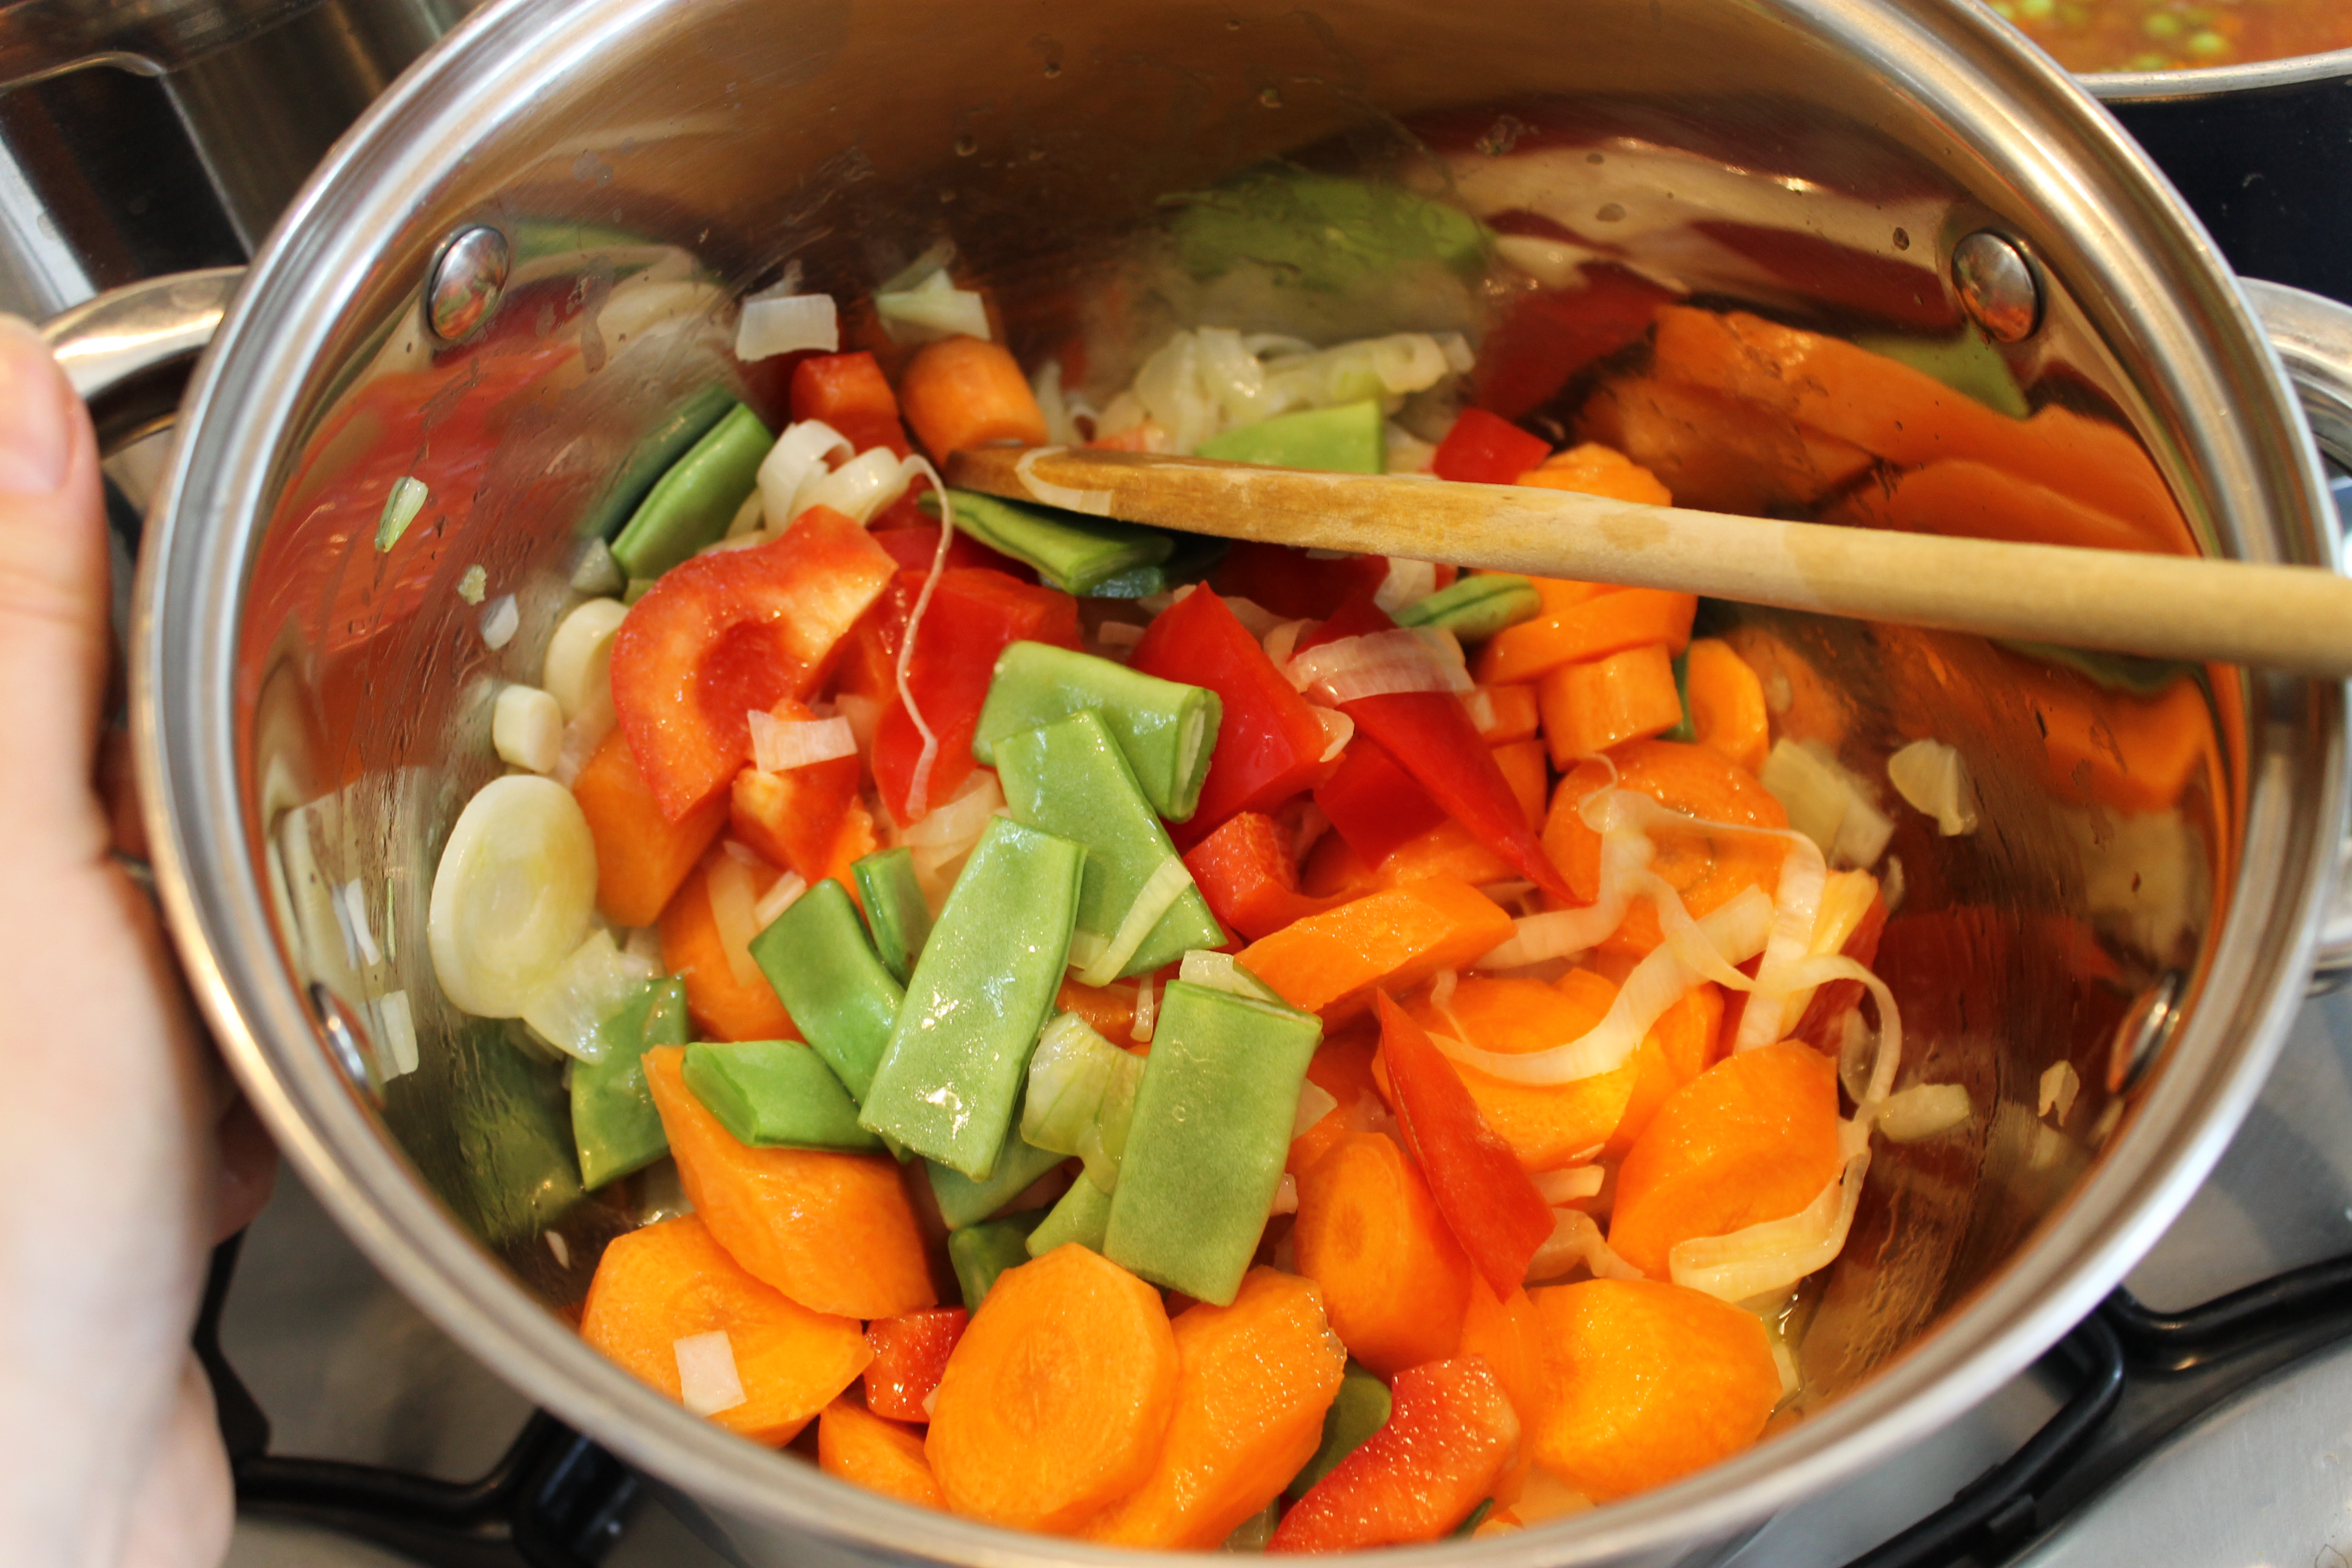 Supa de legume cu doua tipuri de fasole